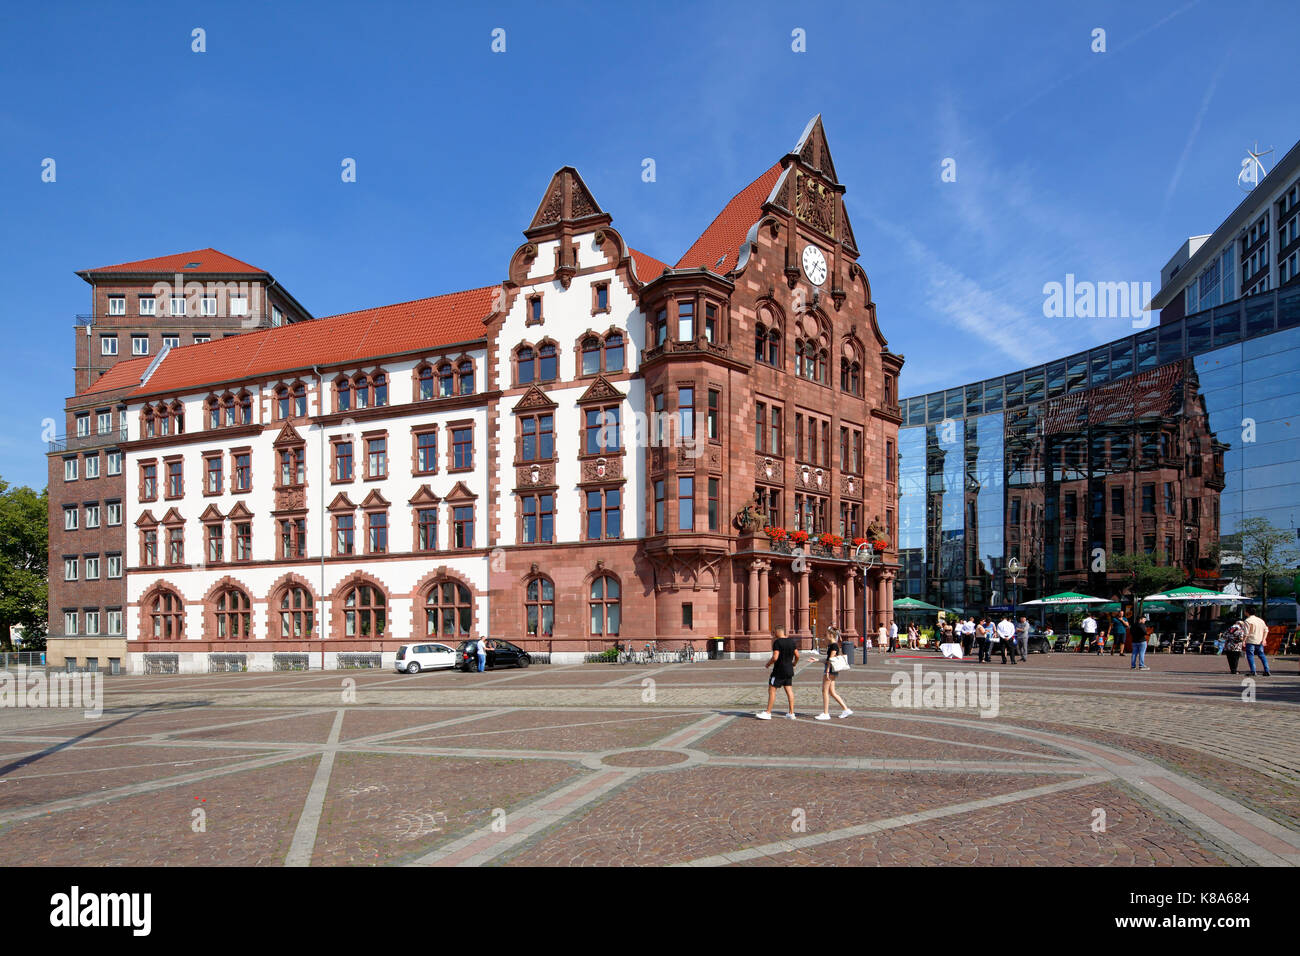 Altes stadthaus und berswordt-halle am friedensplatz à Dortmund, Ruhr, NORDRHEIN-WESTFALEN Banque D'Images